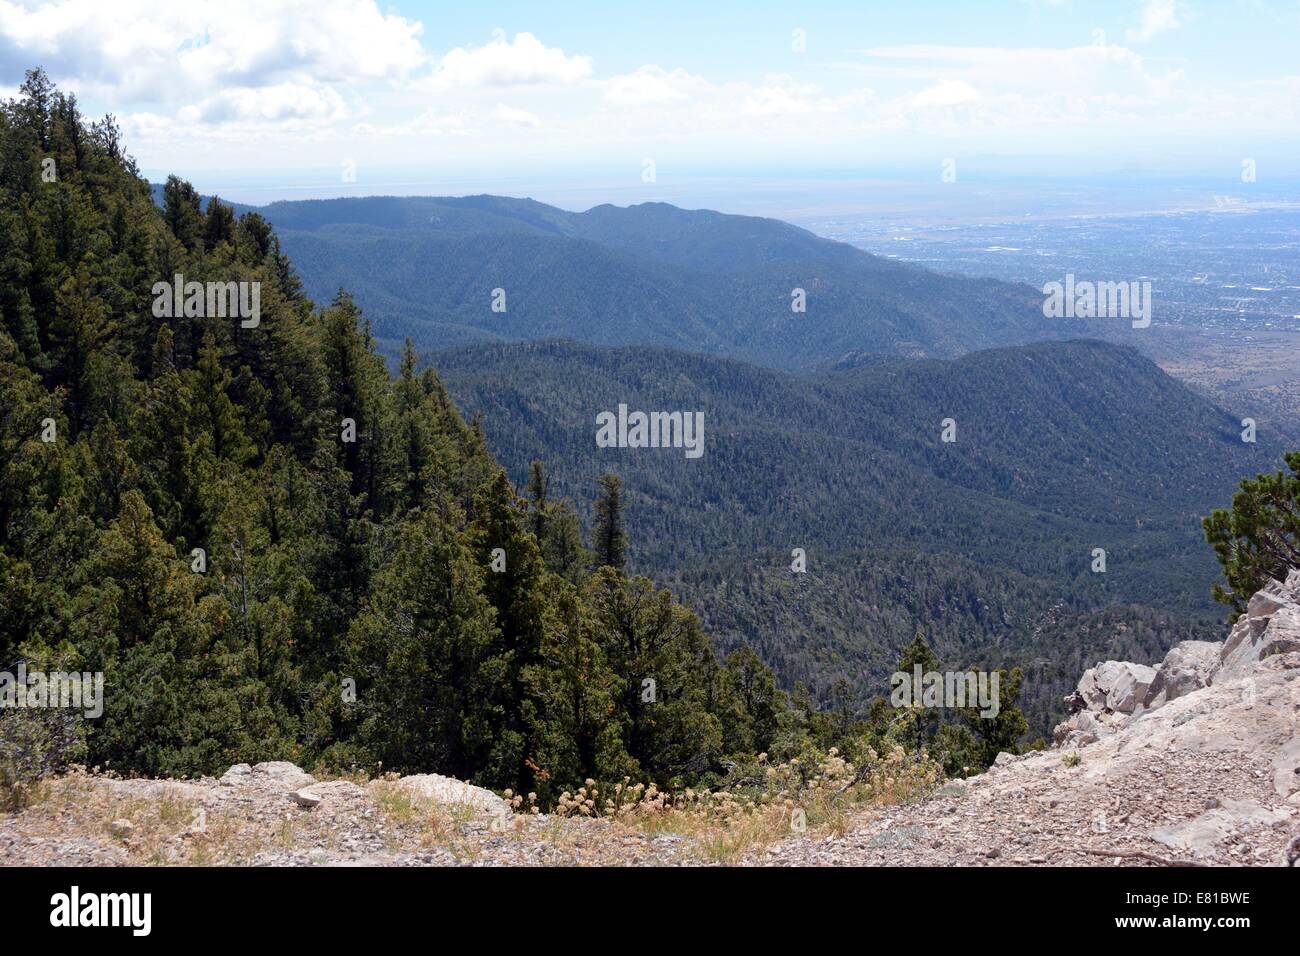 La parte superior del resorte de árbol Trail Montañas Sandia Nuevo México - Estados Unidos Foto de stock